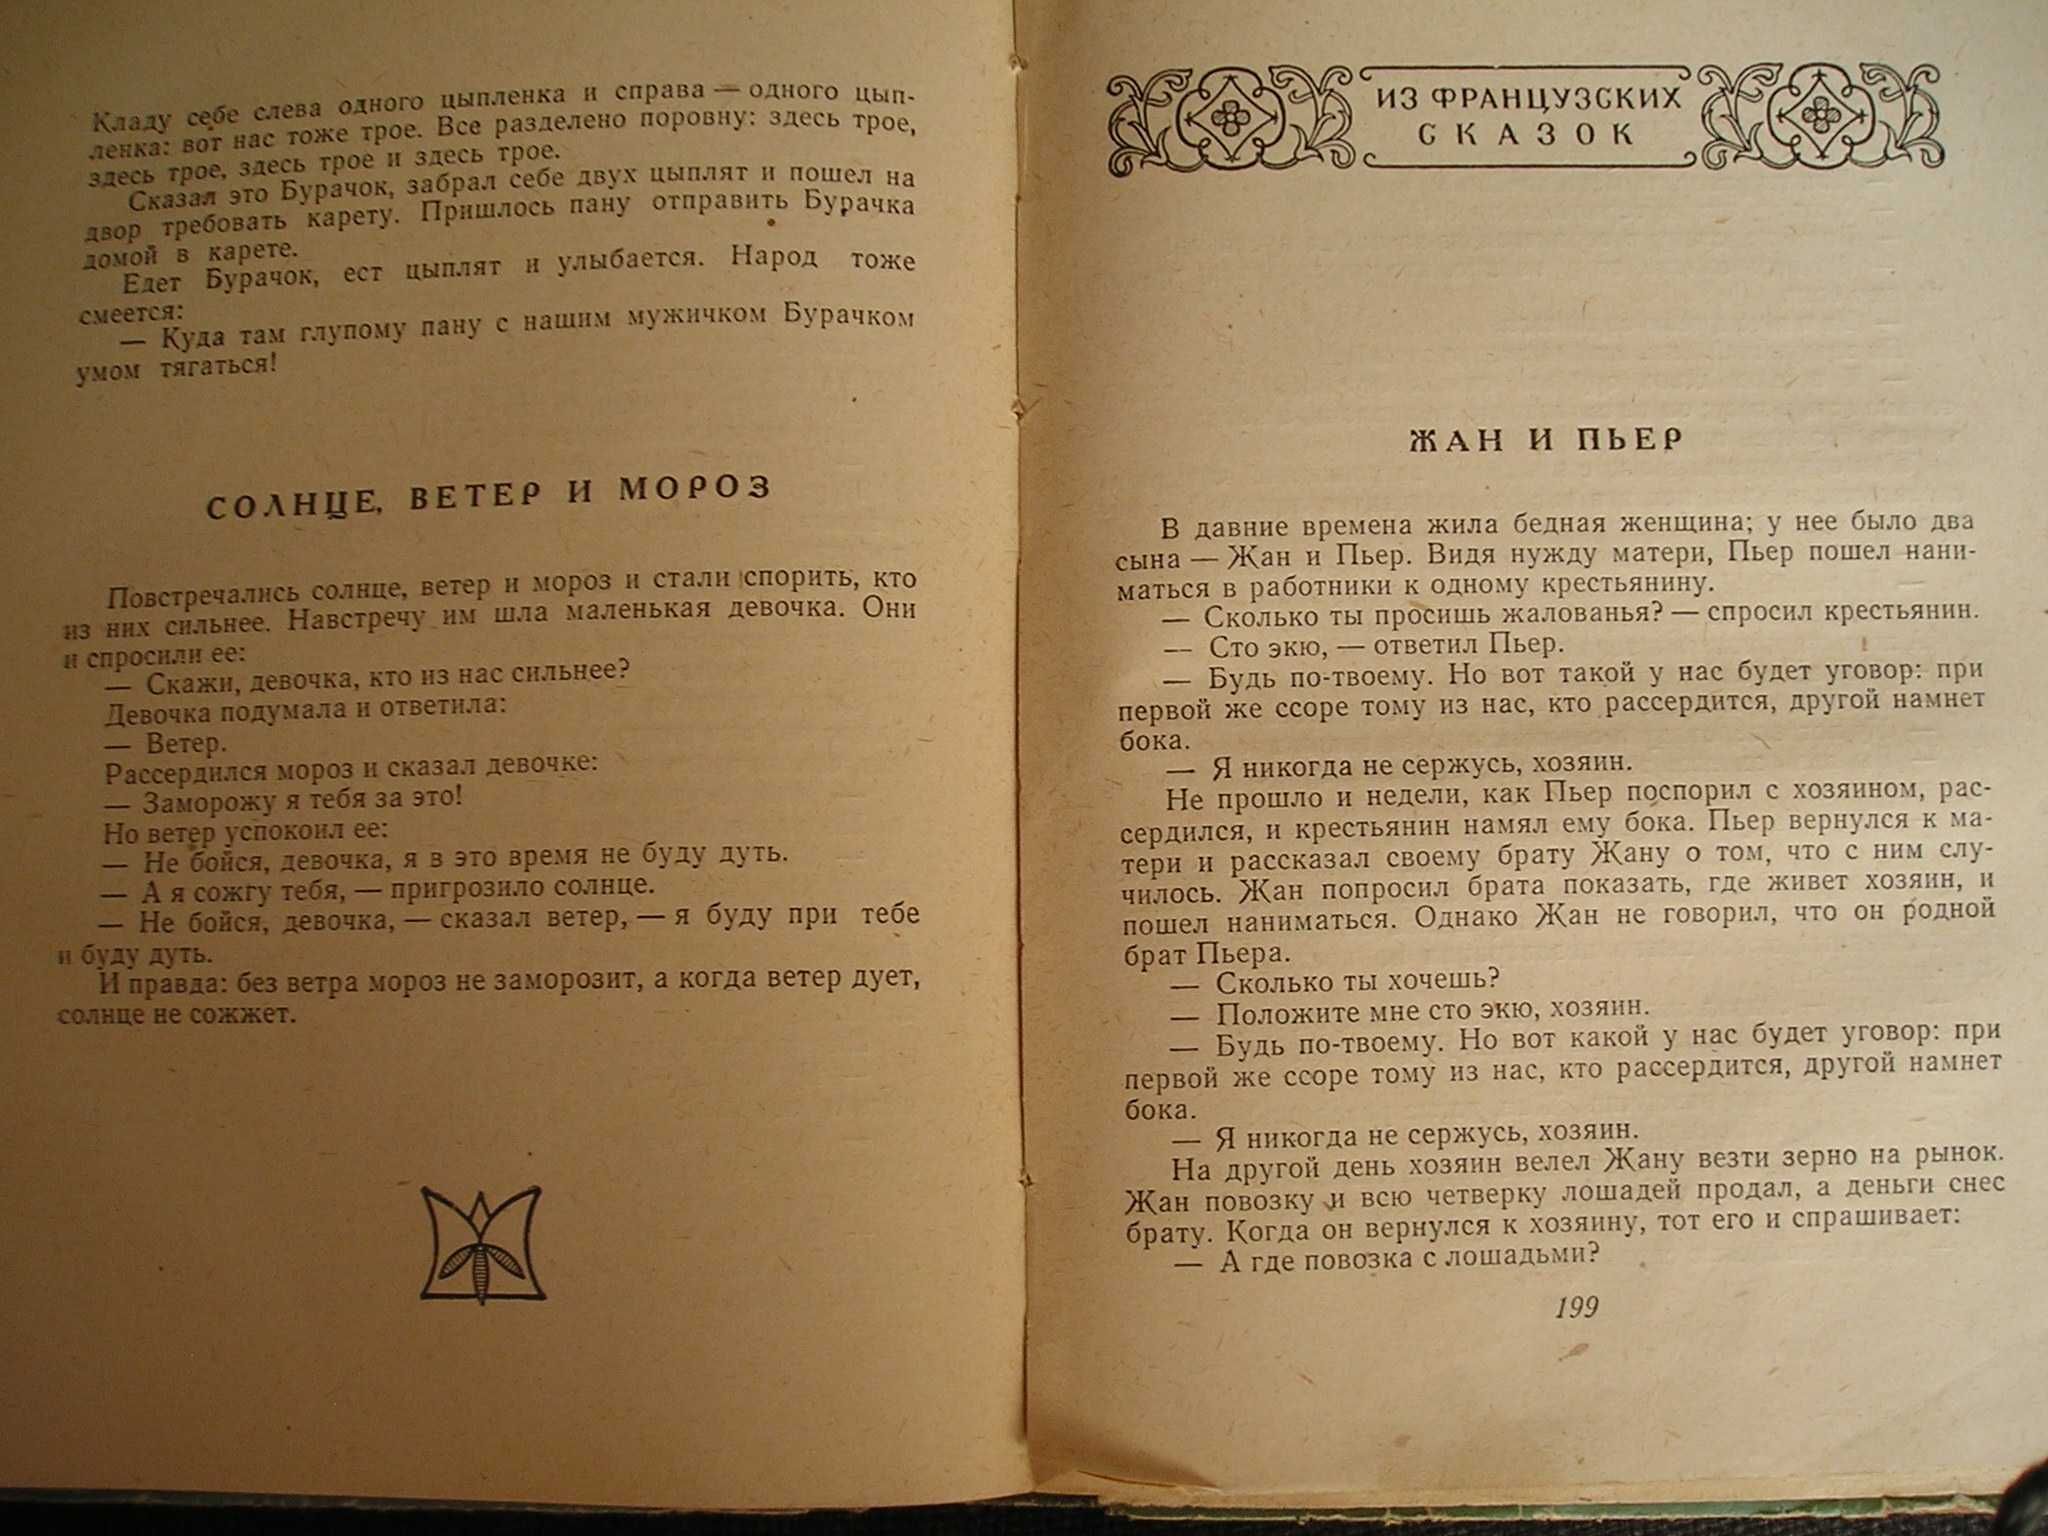 Сказки мира - 70 сказок народов мира (издание СССР 1961 г)